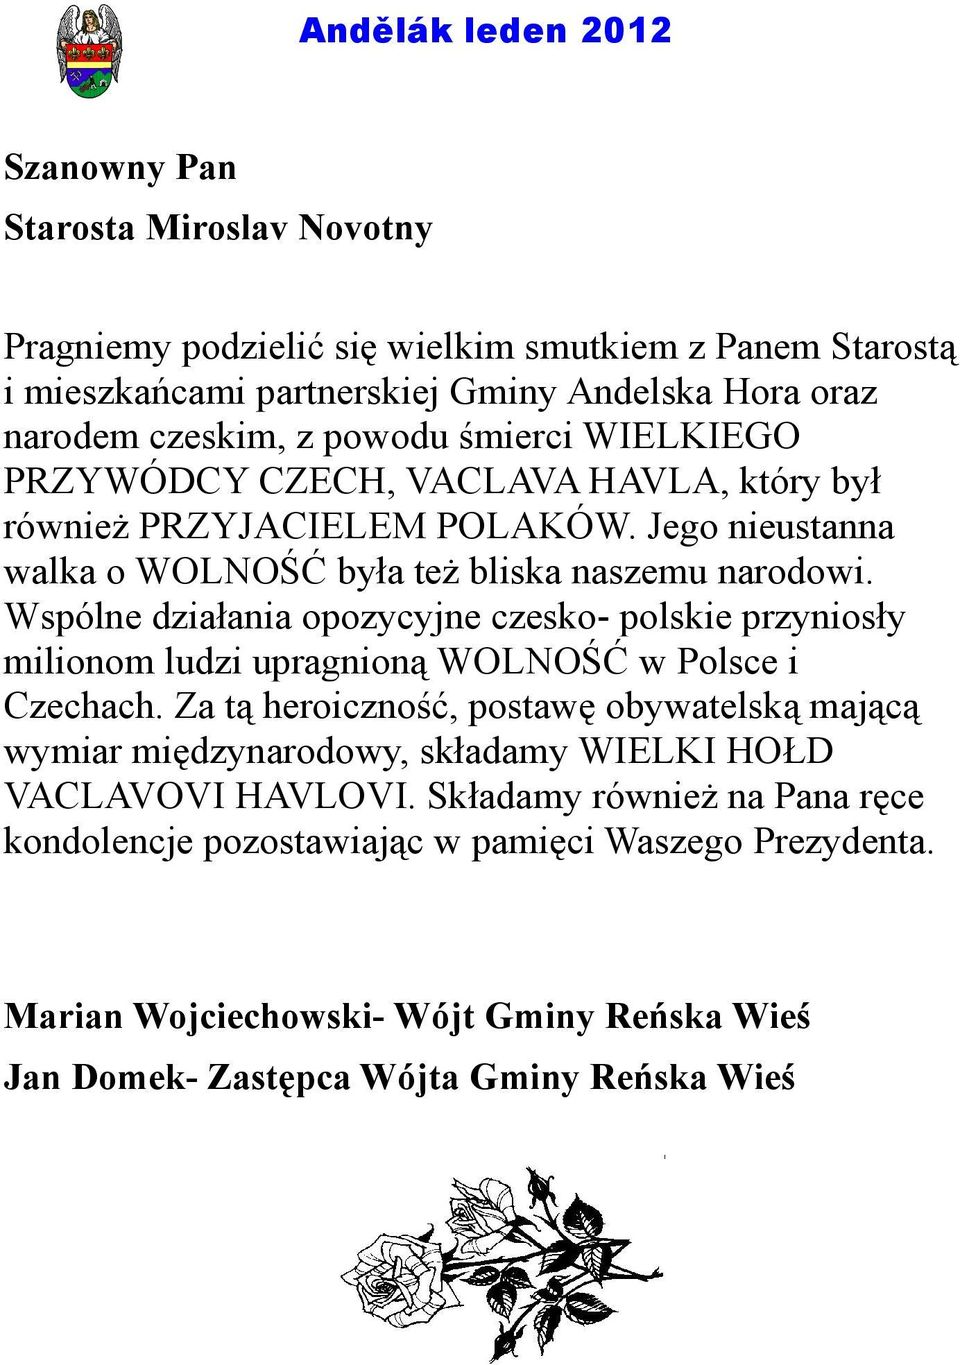 Wspólne działania opozycyjne czesko- polskie przyniosły milionom ludzi upragnioną WOLNOŚĆ w Polsce i Czechach.